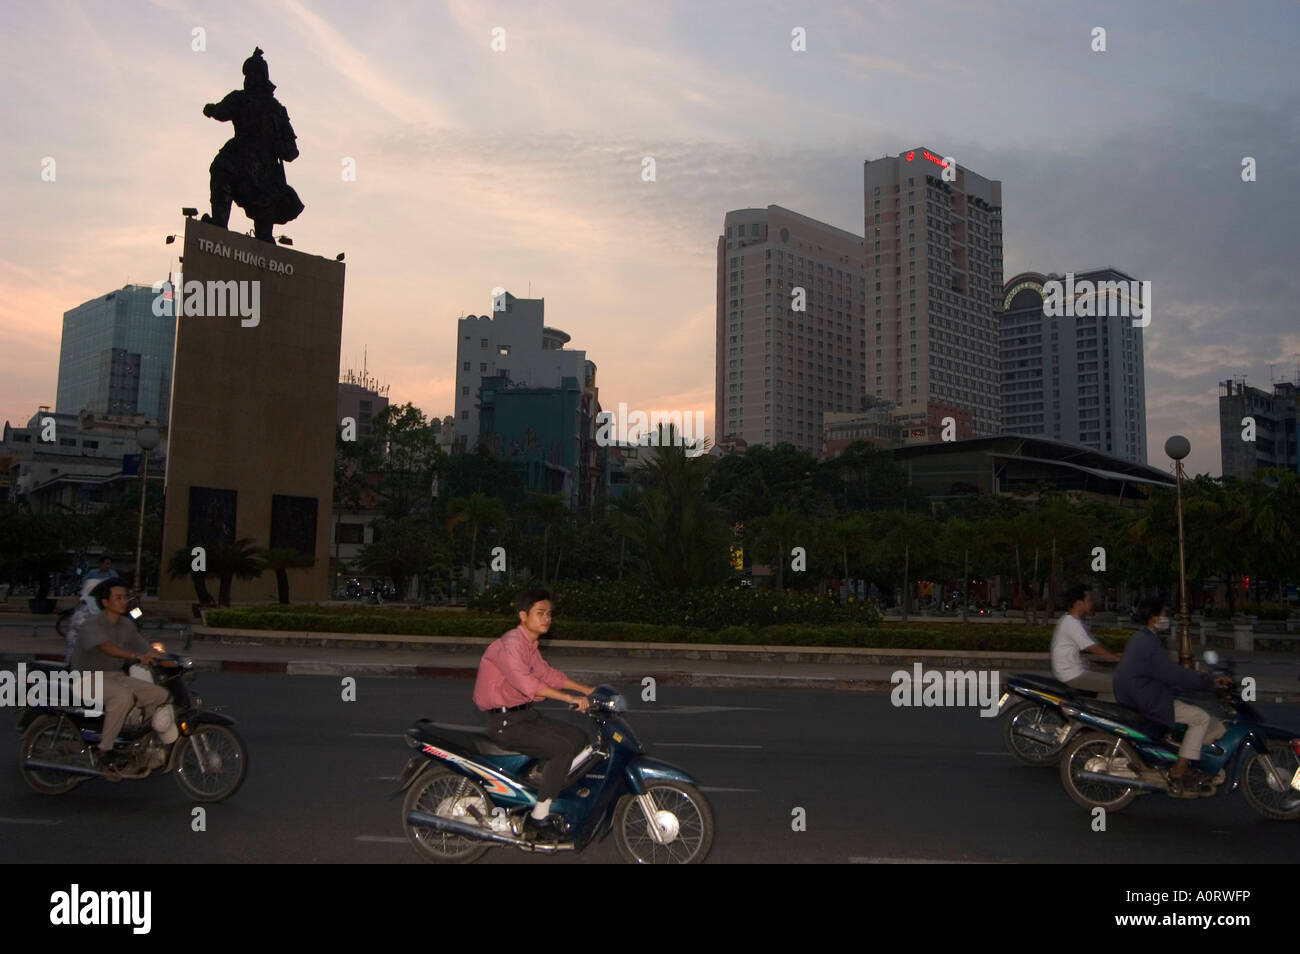 Tran Hung Dao statue ville coucher de Ho Chi Minh City Saigon Vietnam Asie Asie du sud-est Banque D'Images